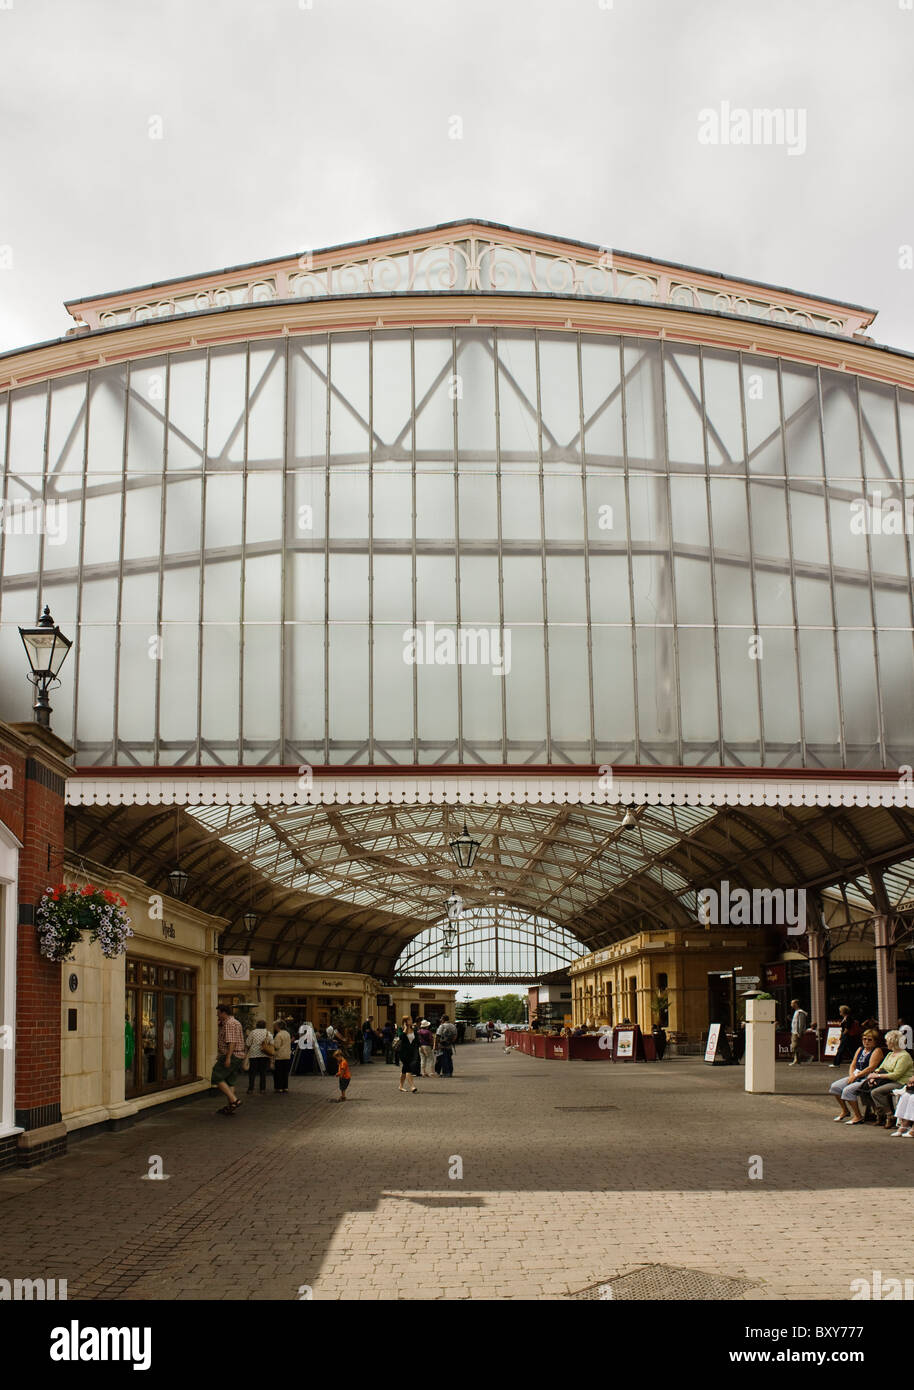 La gare centrale de Windsor et Eton, Berkshire. 1895-7, typique de Great Western Railway station, avec un toit en verre. Banque D'Images